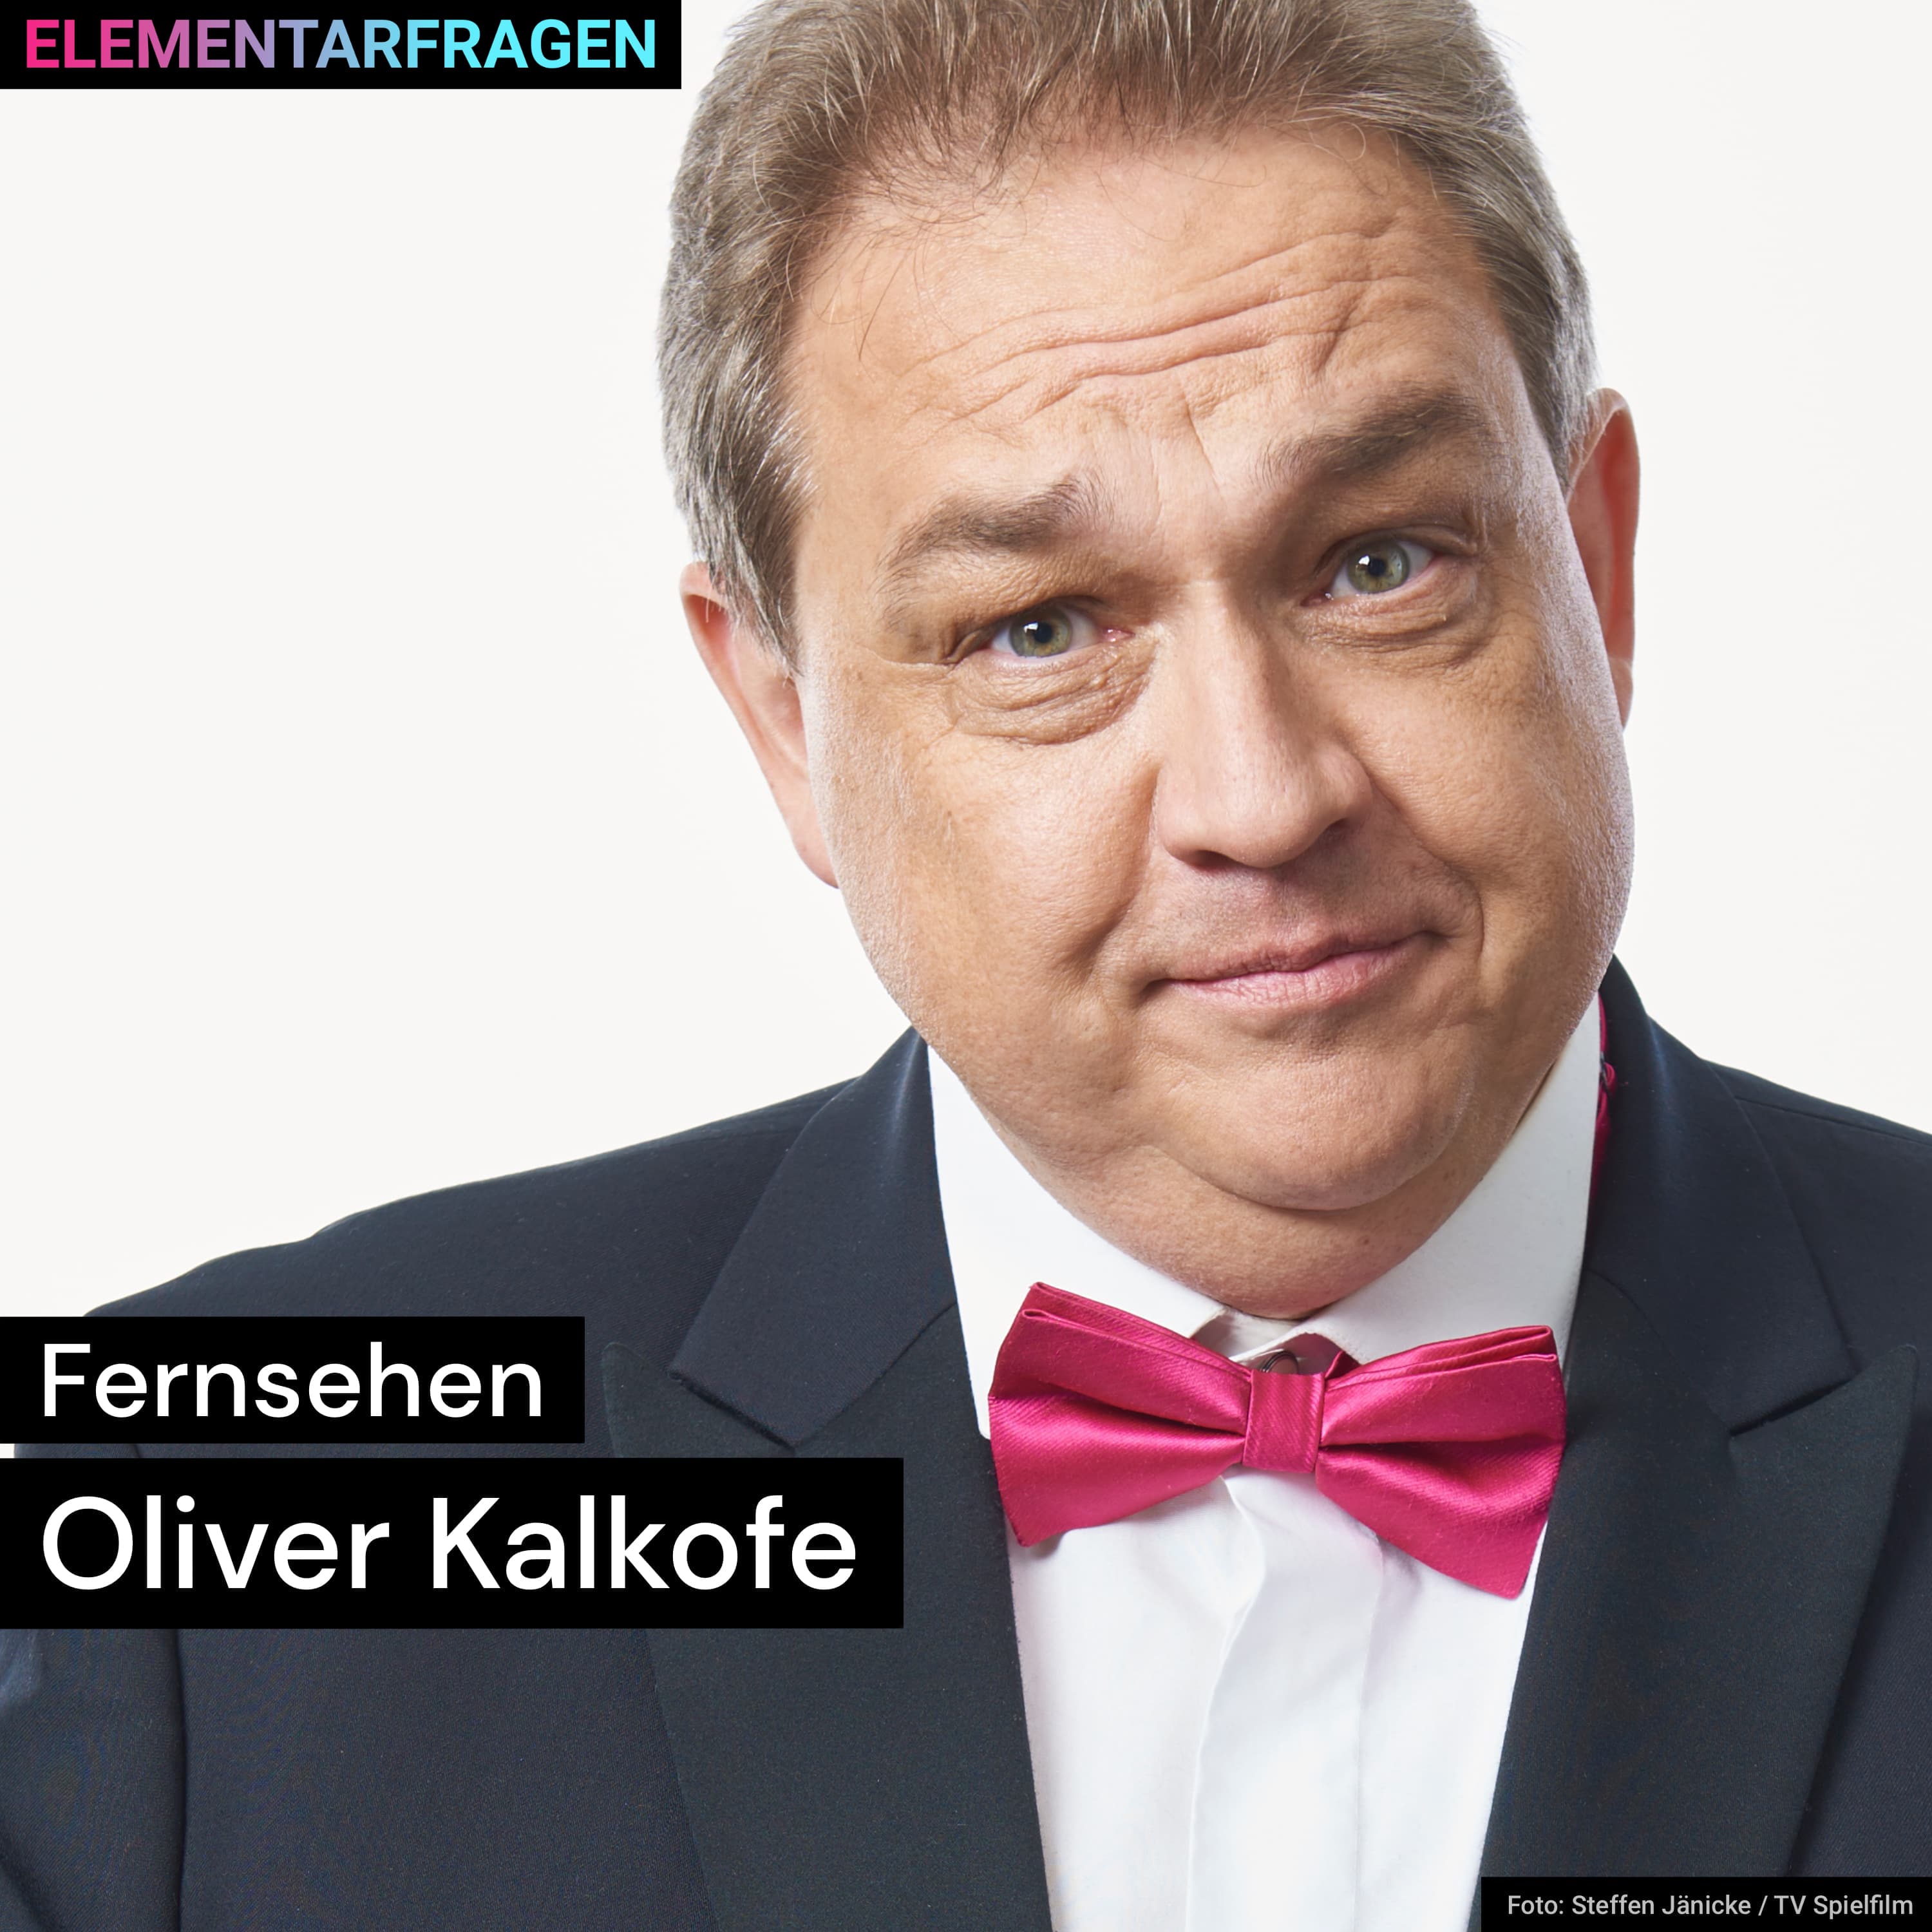 Fernsehen | Oliver Kalkofe